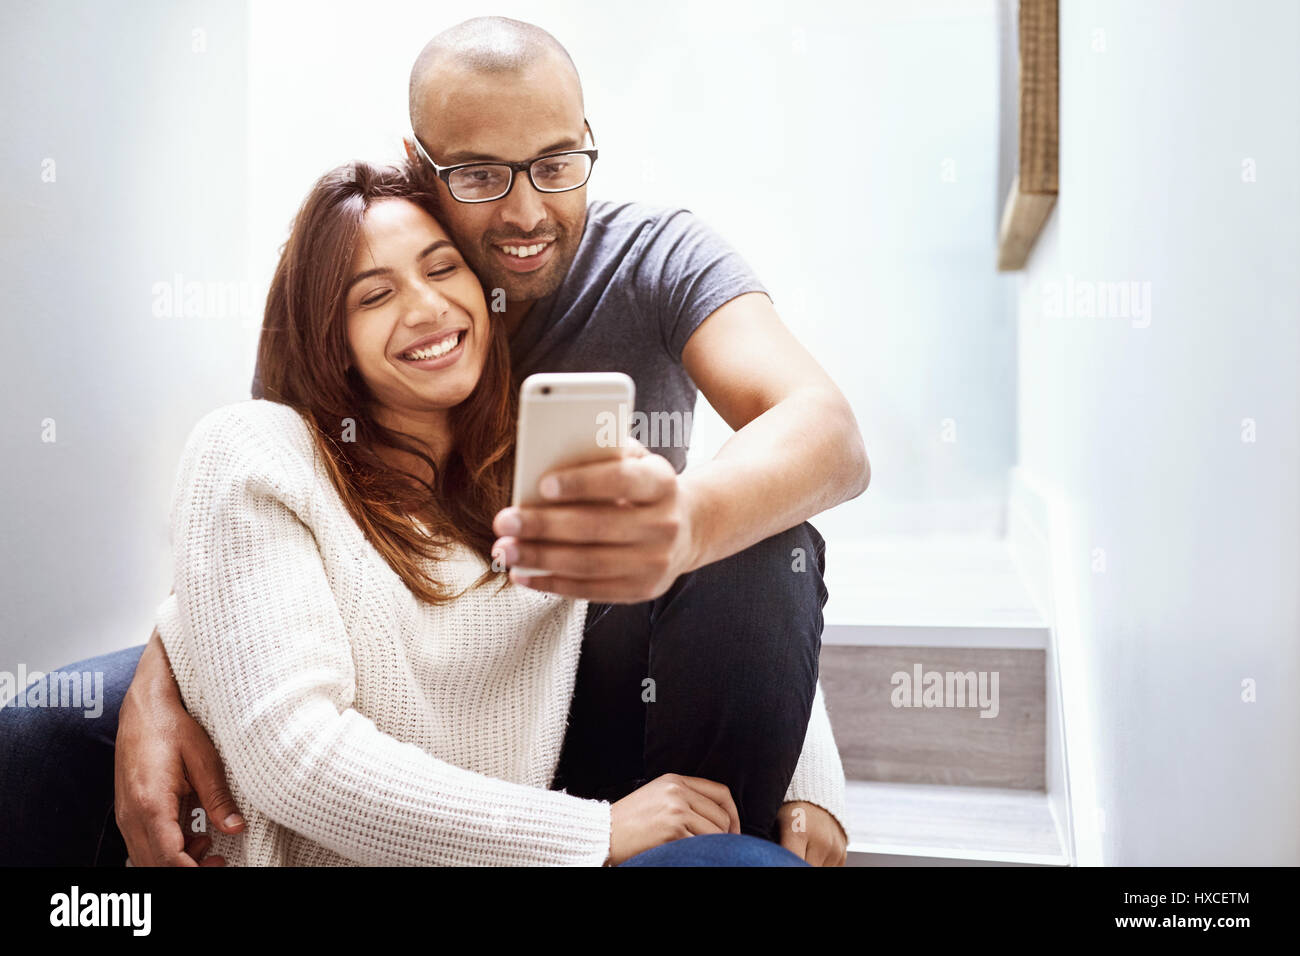 Lächelndes Paar mit Kamera Handy unter selfie auf Treppen Stockfoto